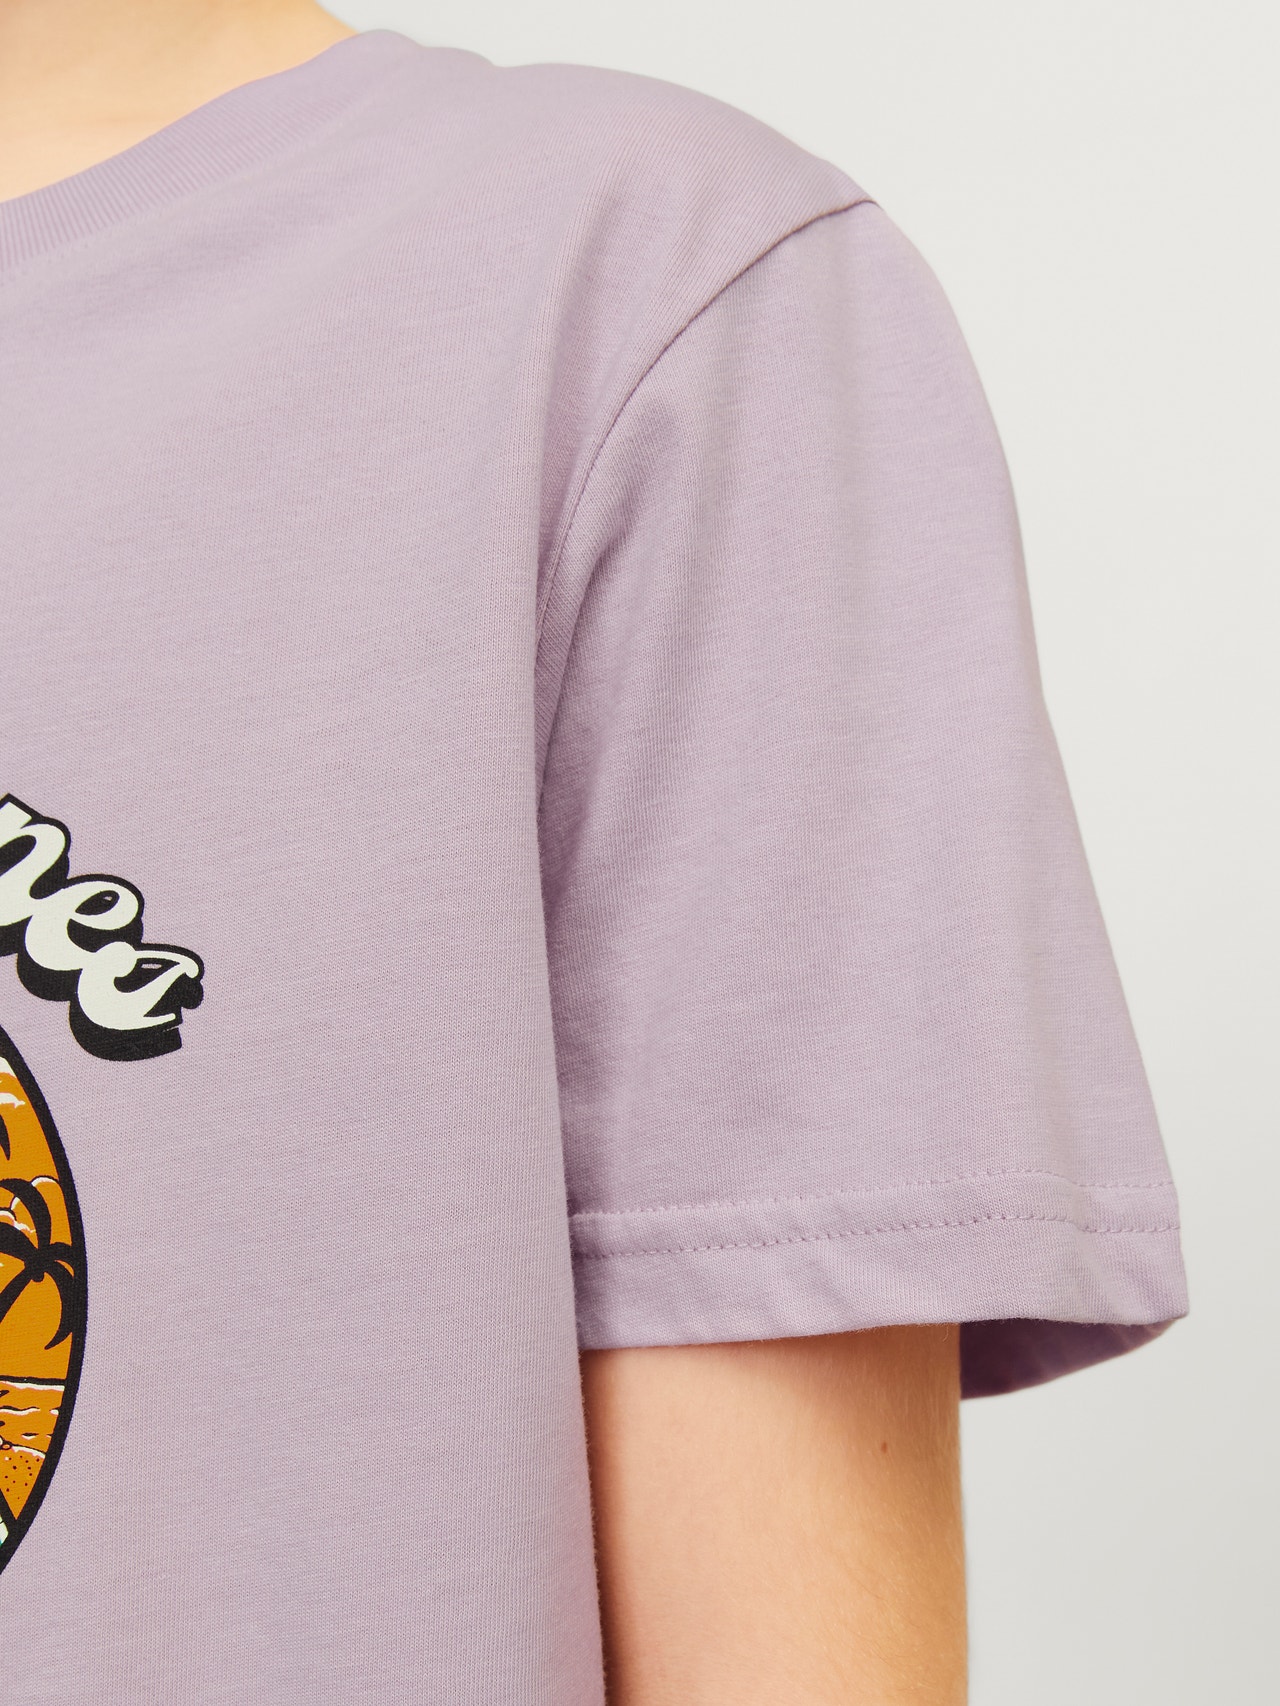 Jack & Jones Camiseta Estampado Para chicos -Lavender Frost - 12257131